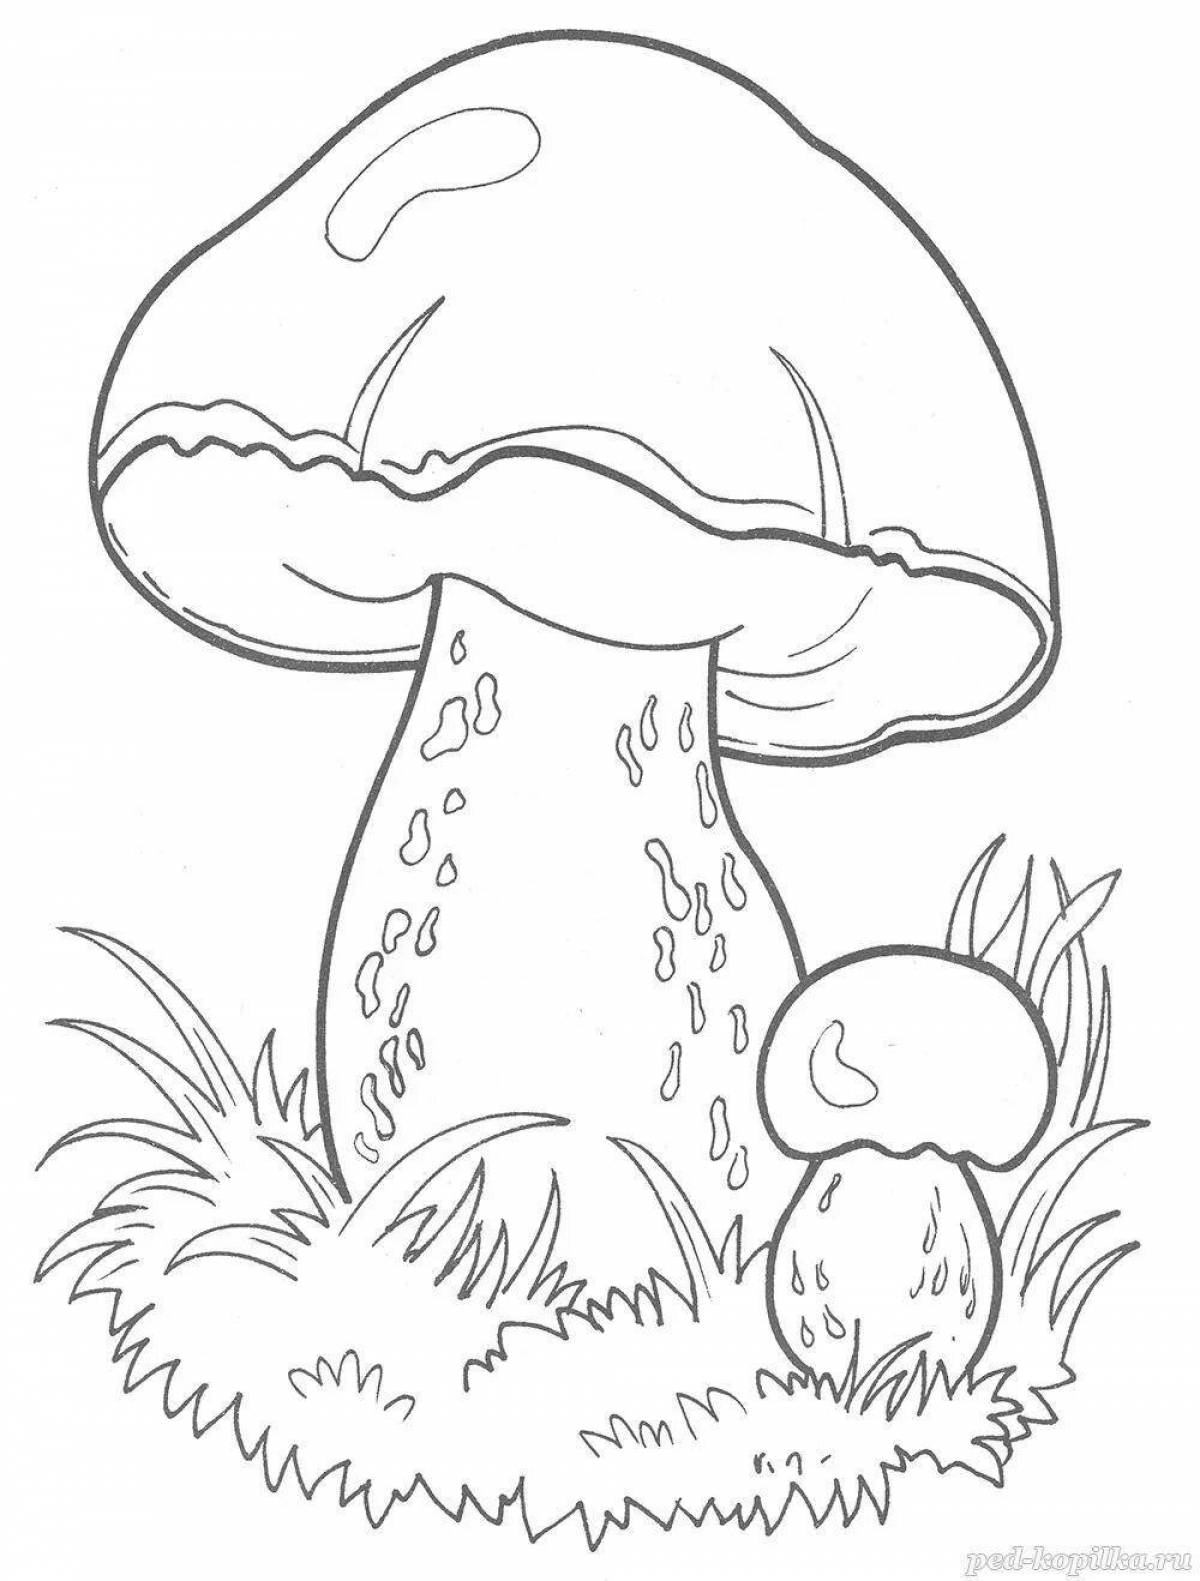 Living white mushrooms coloring for children